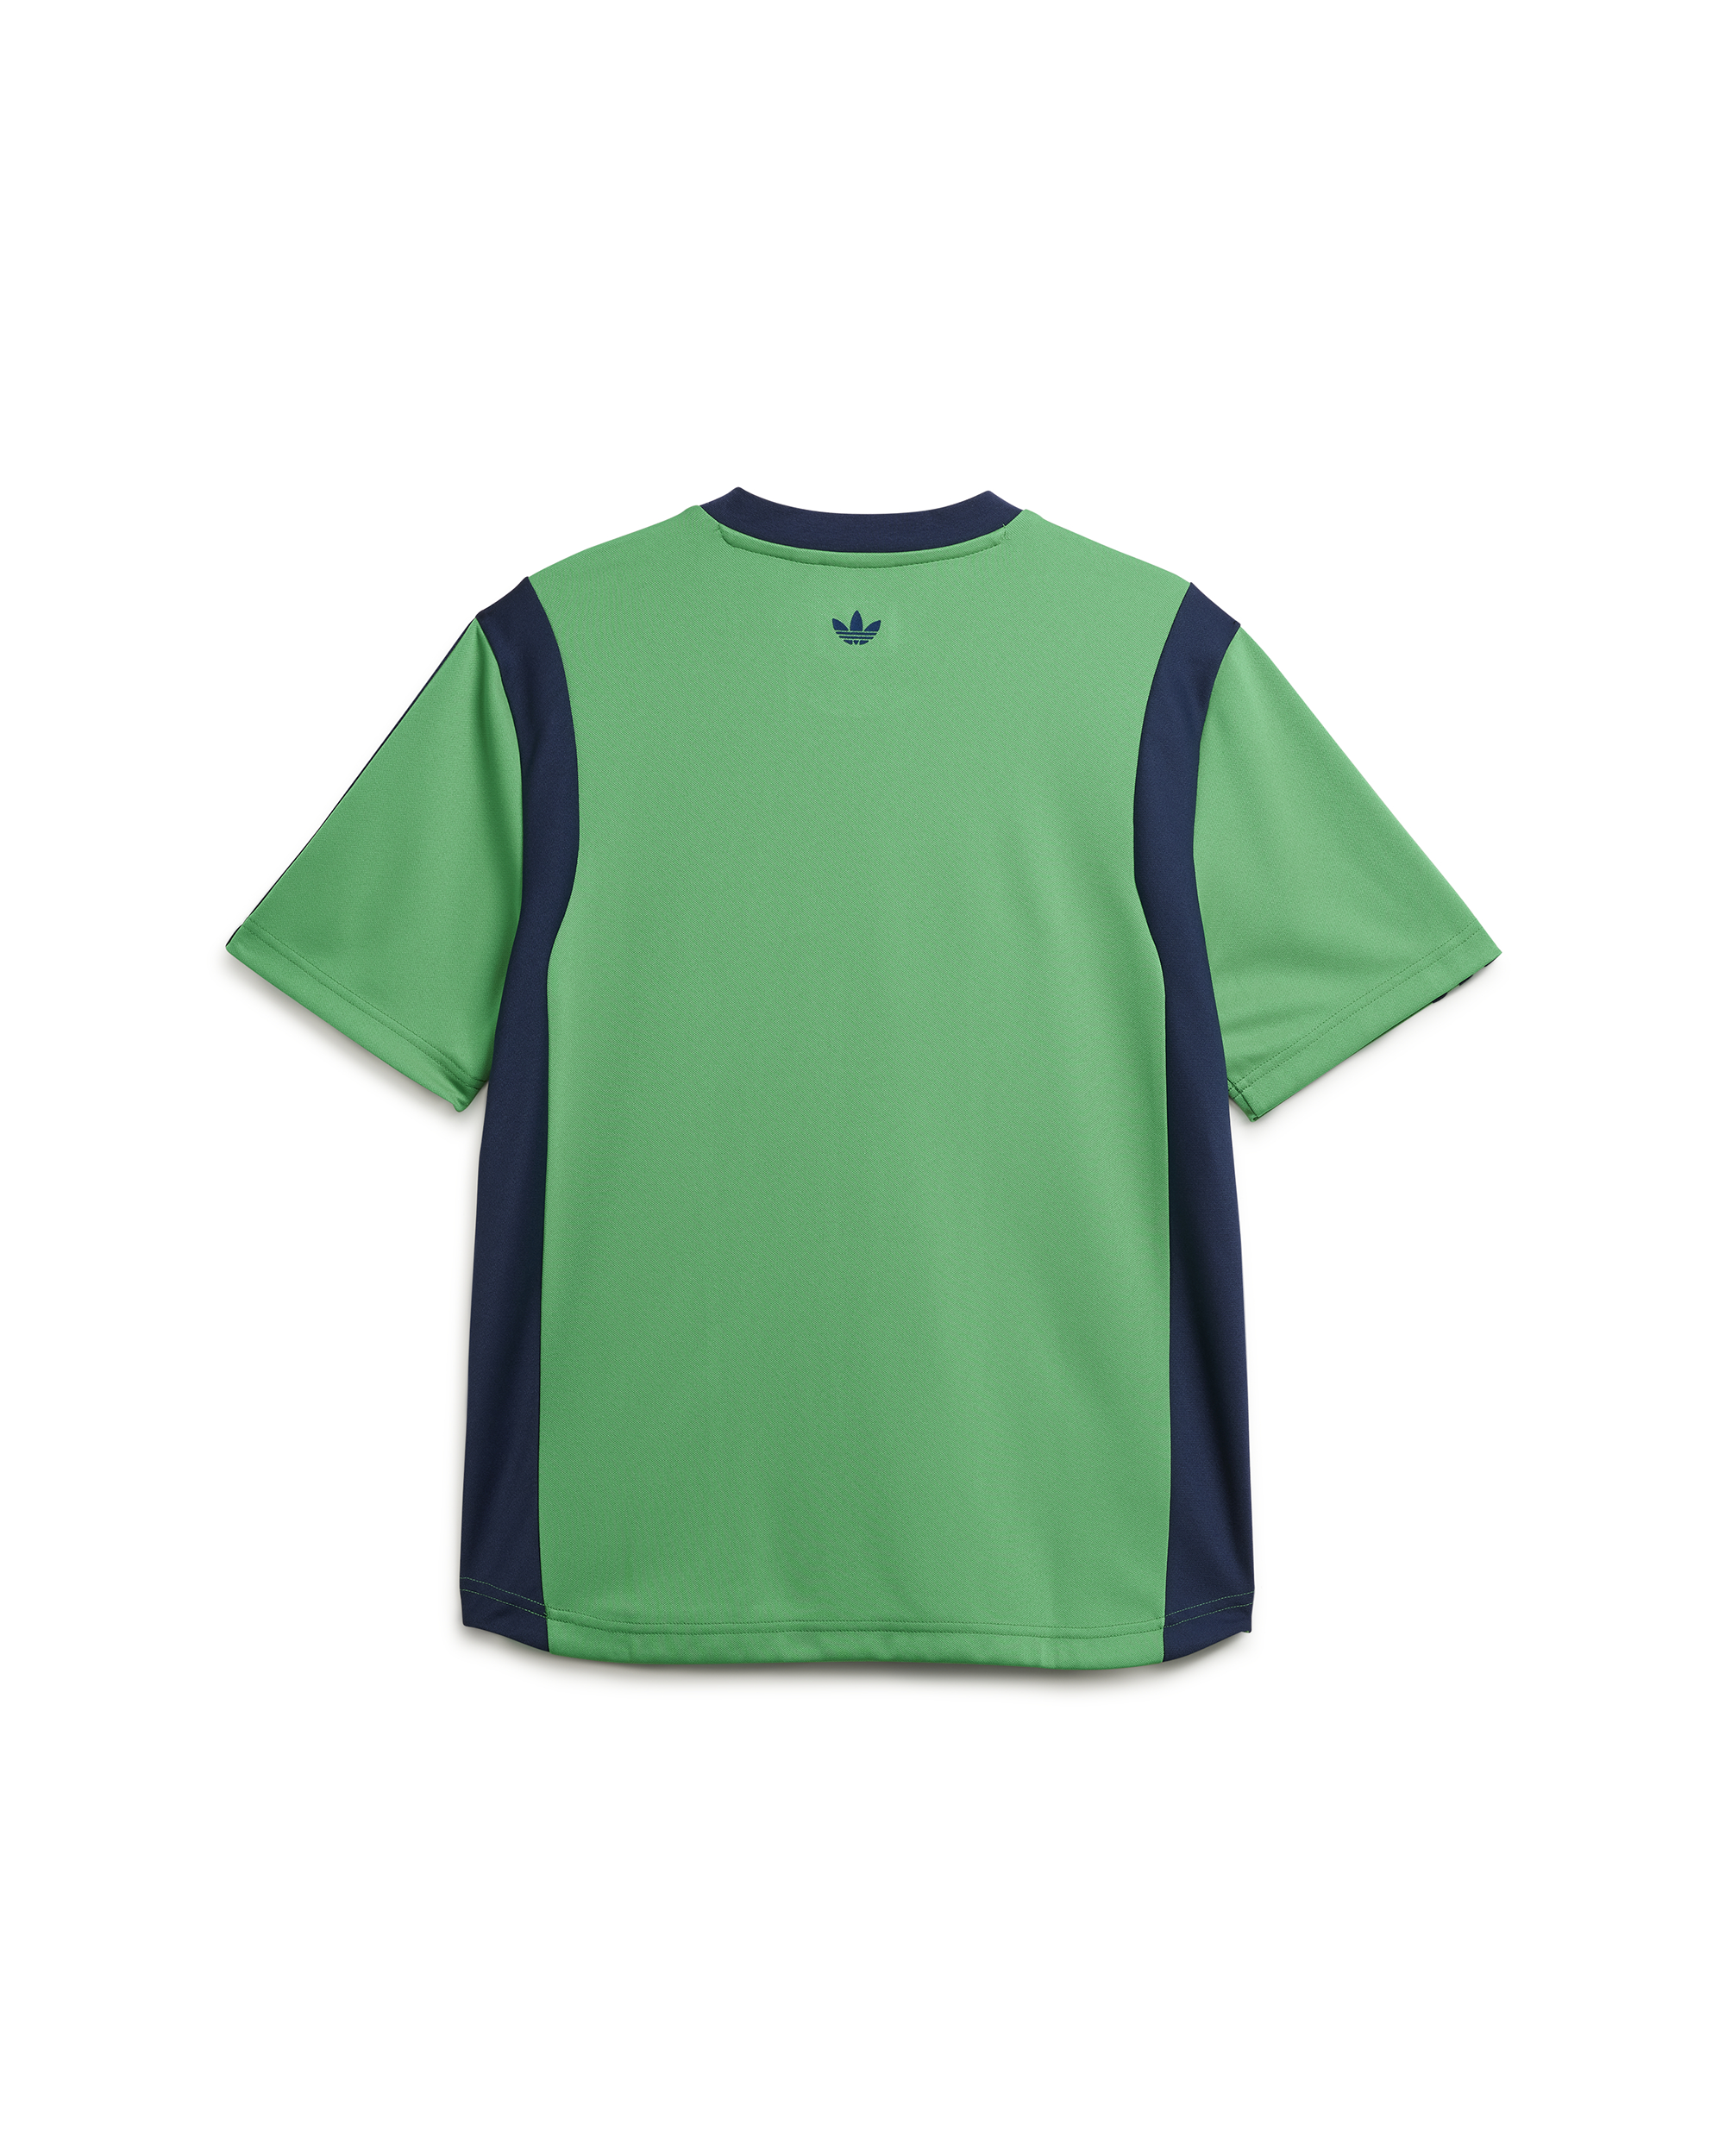 Wales Bonner Football Shirt - Vivid Green